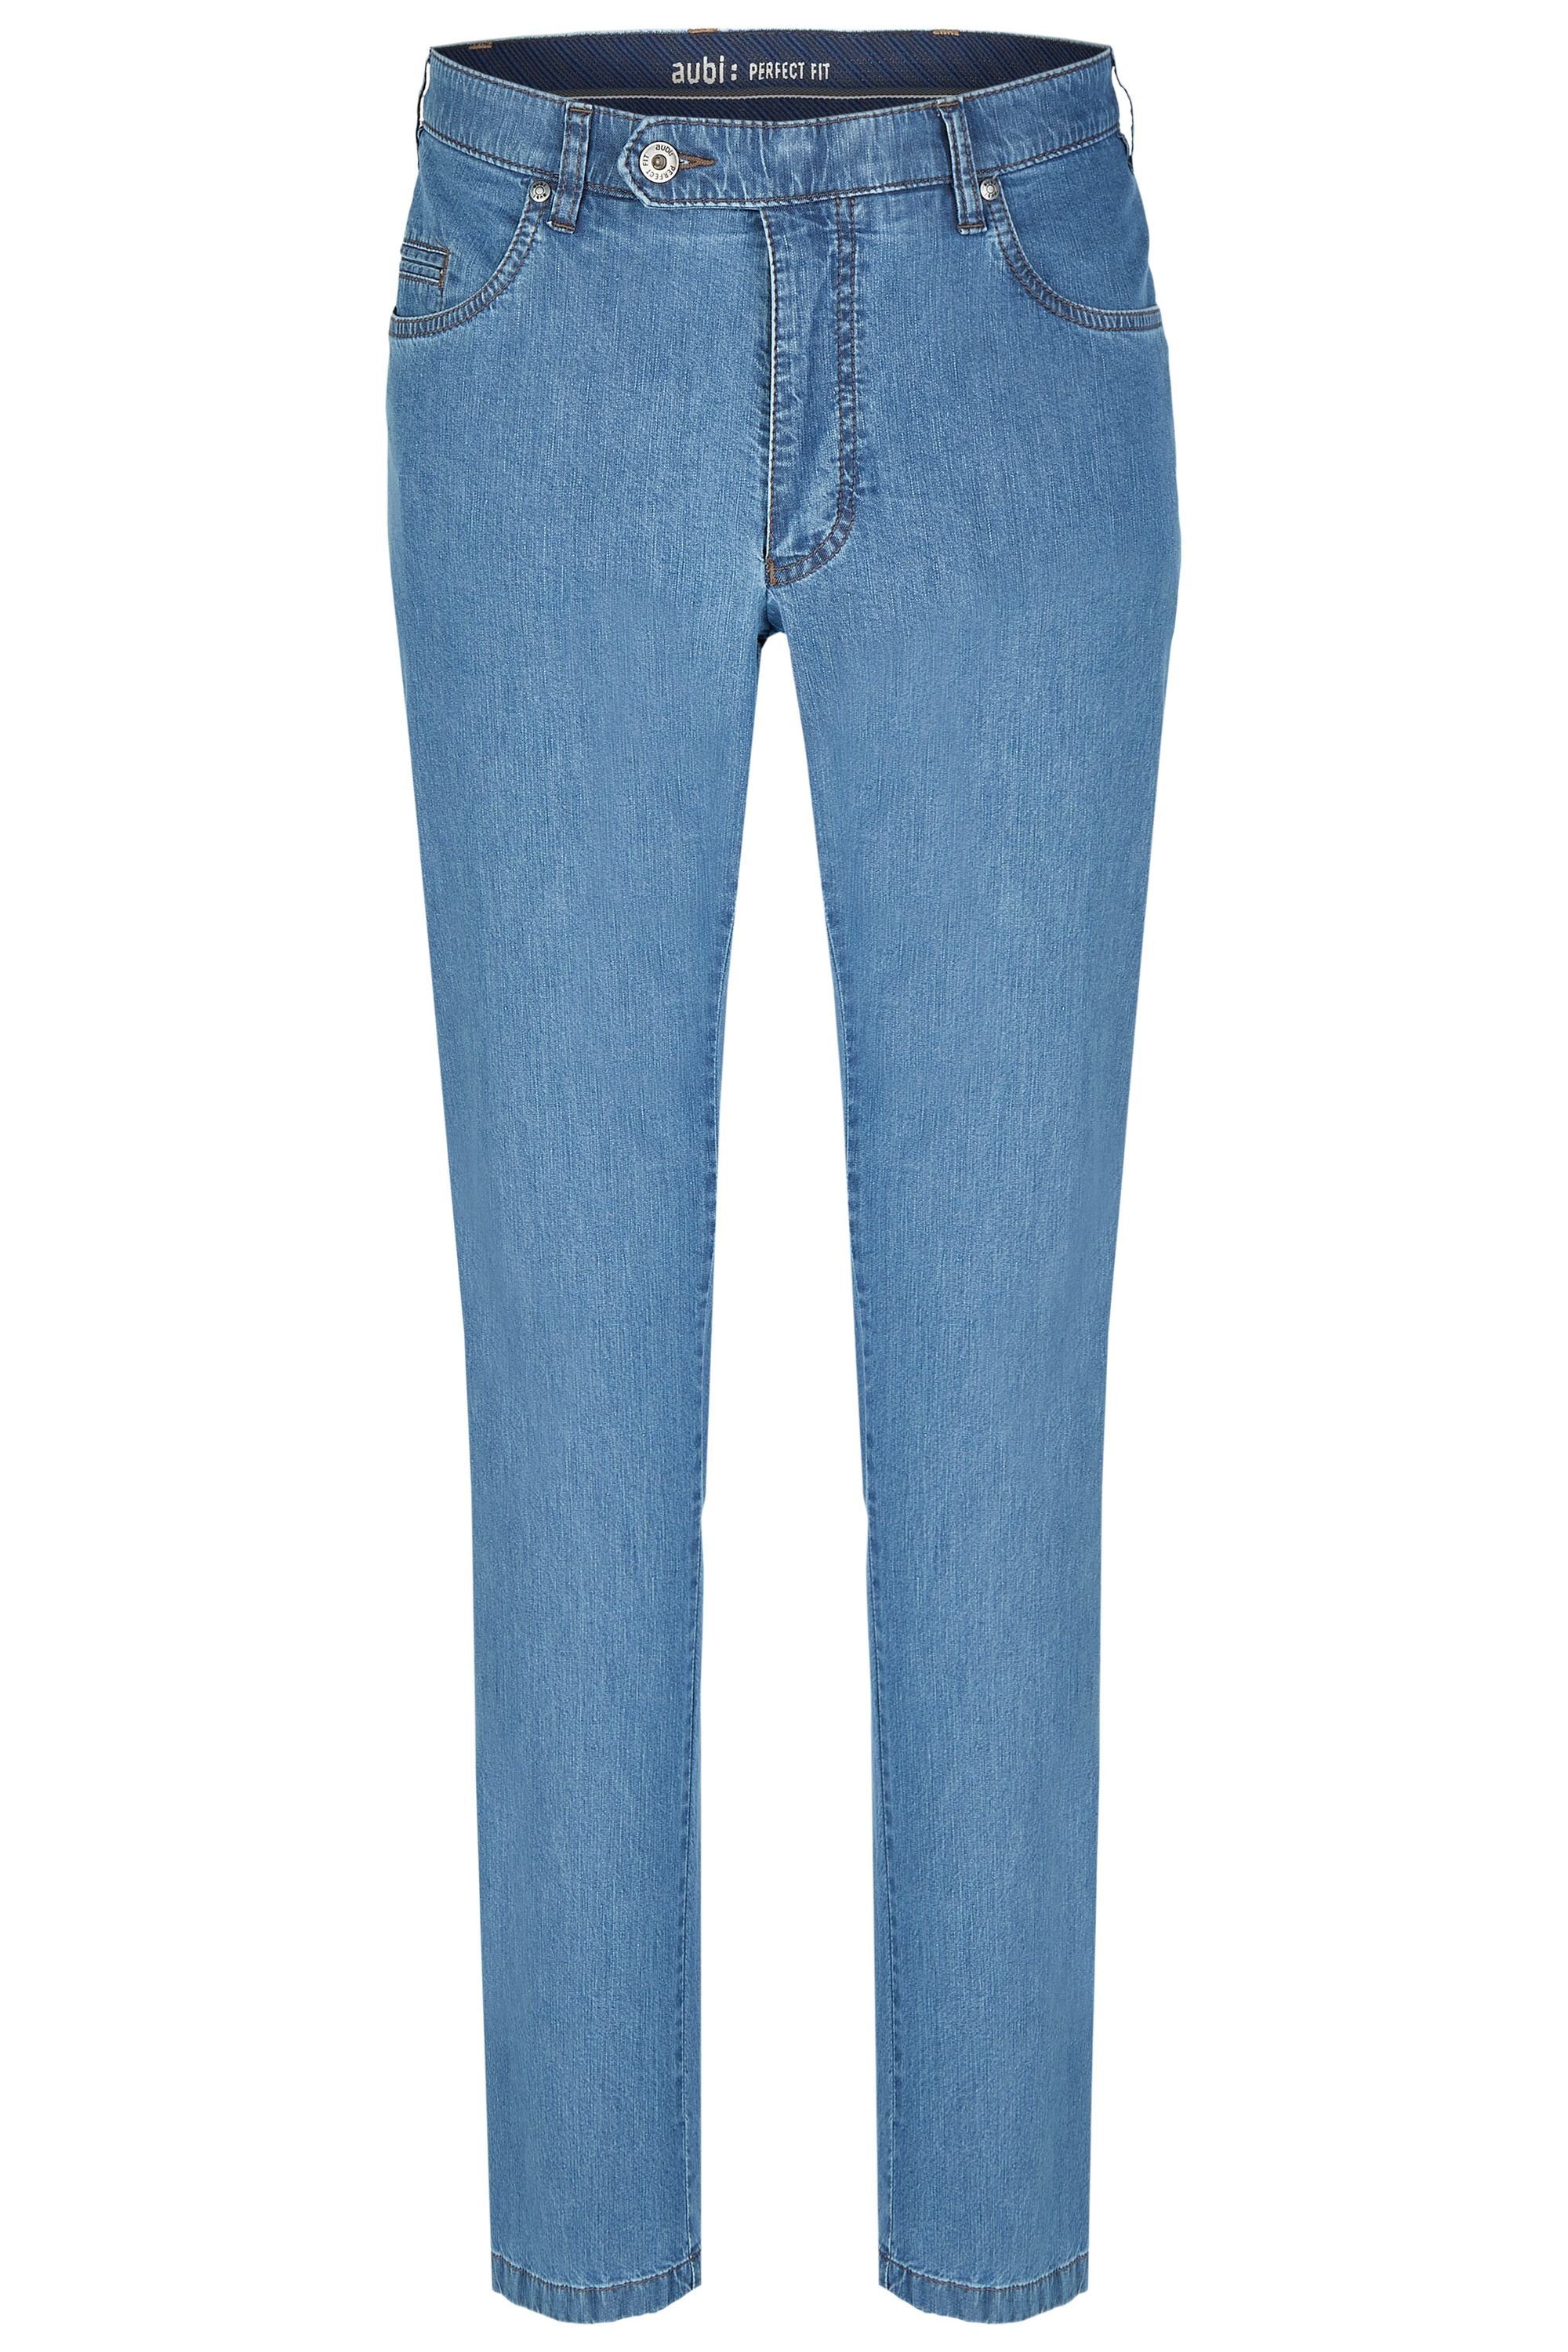 aubi: Bequeme Fit aubi Modell Sommer Stretch bleached Hose (43) High Flex Herren Jeans aus Baumwolle 577 Jeans Perfect